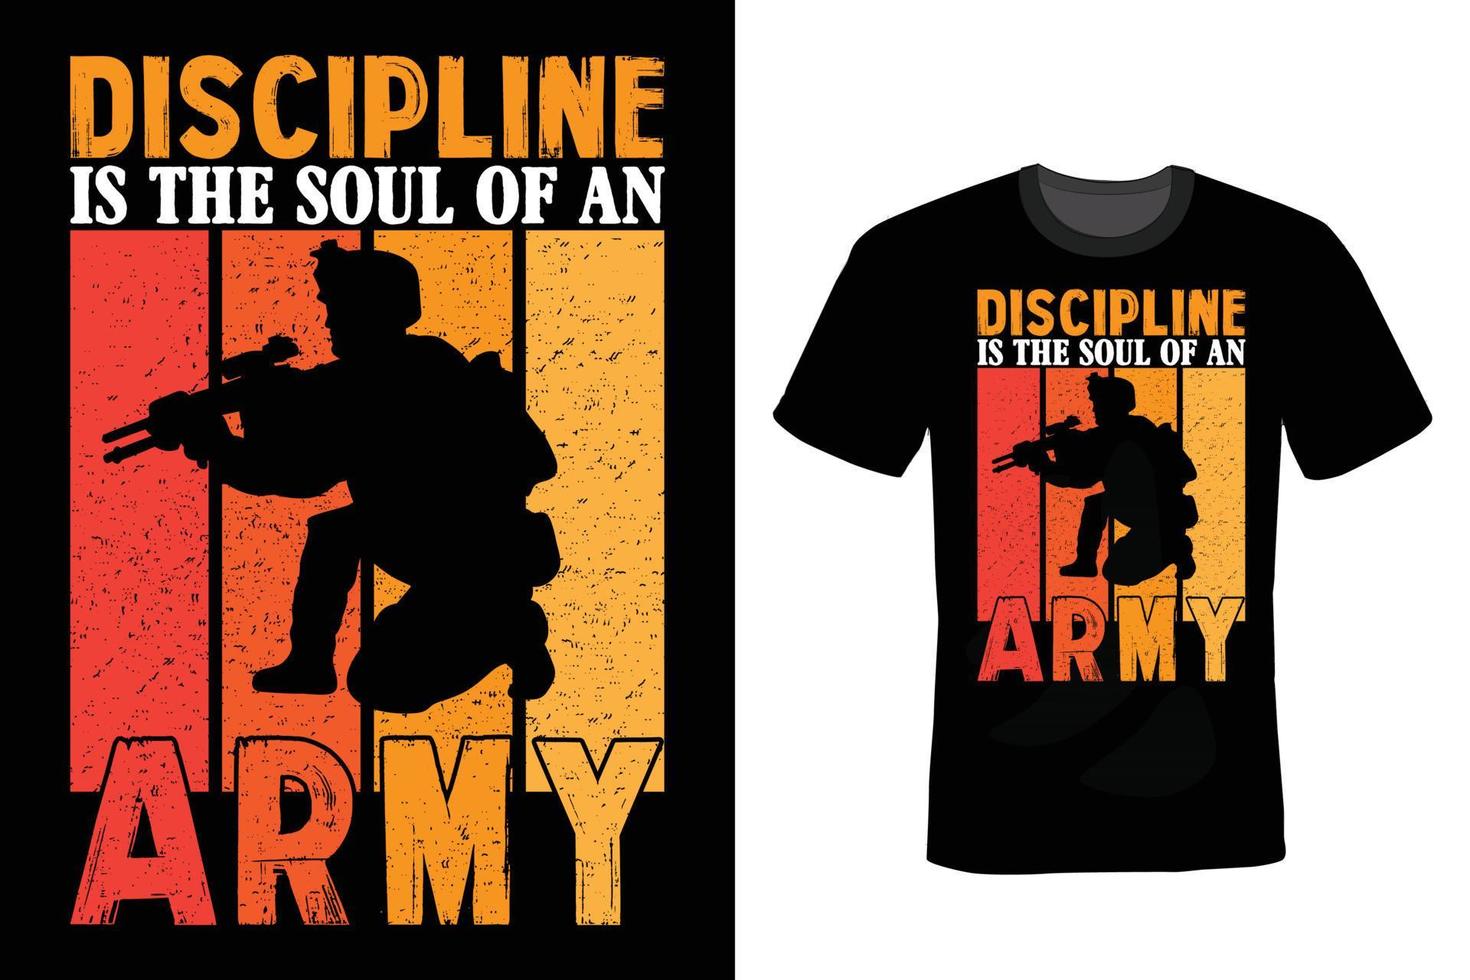 diseño de camiseta del ejército, vintage, tipografía vector